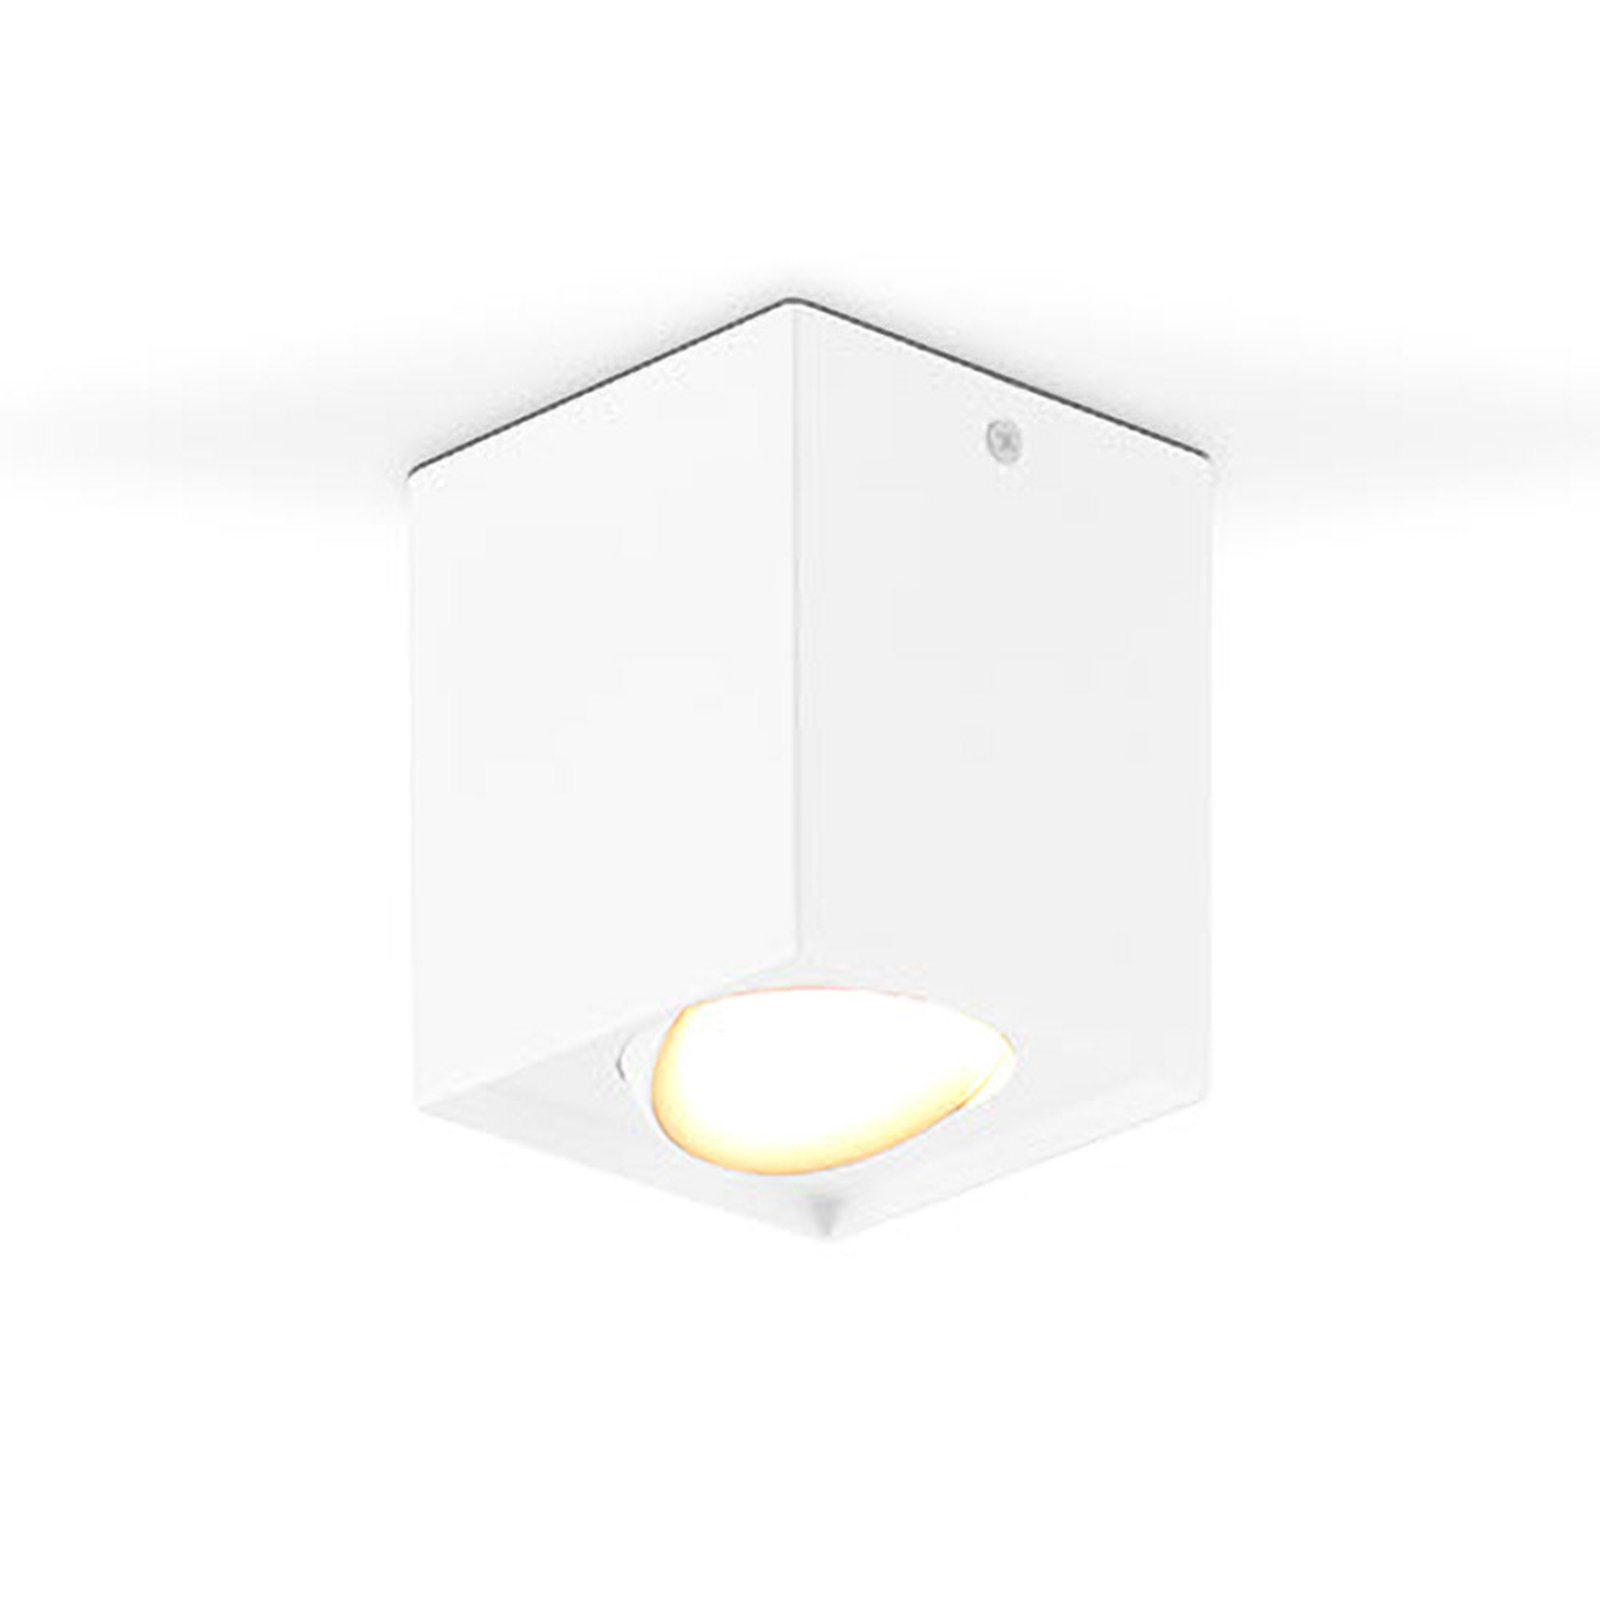 EVN Kardanus stropné LED svetlo, 9x9 cm, biela